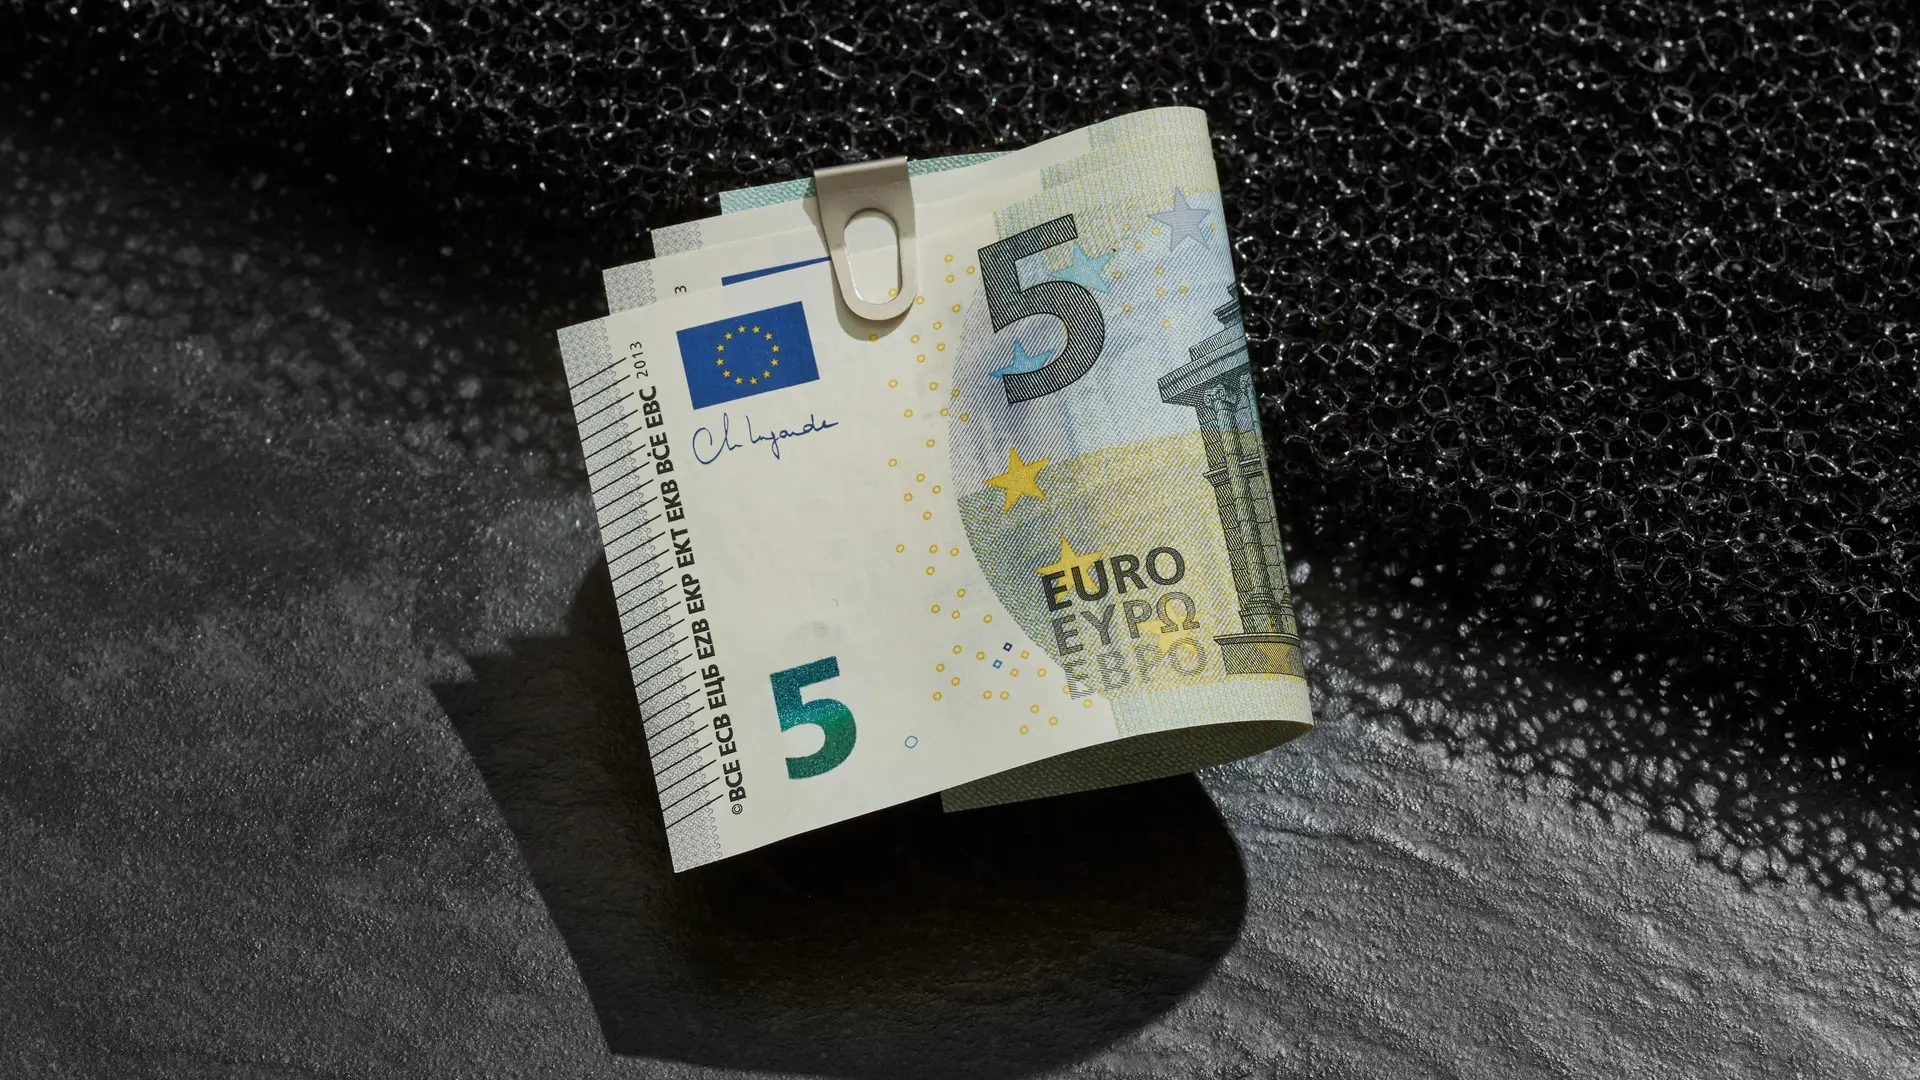 Ein Buendel 5-Euroscheine mit einer klammer befestigt liegt auf einer Kante.